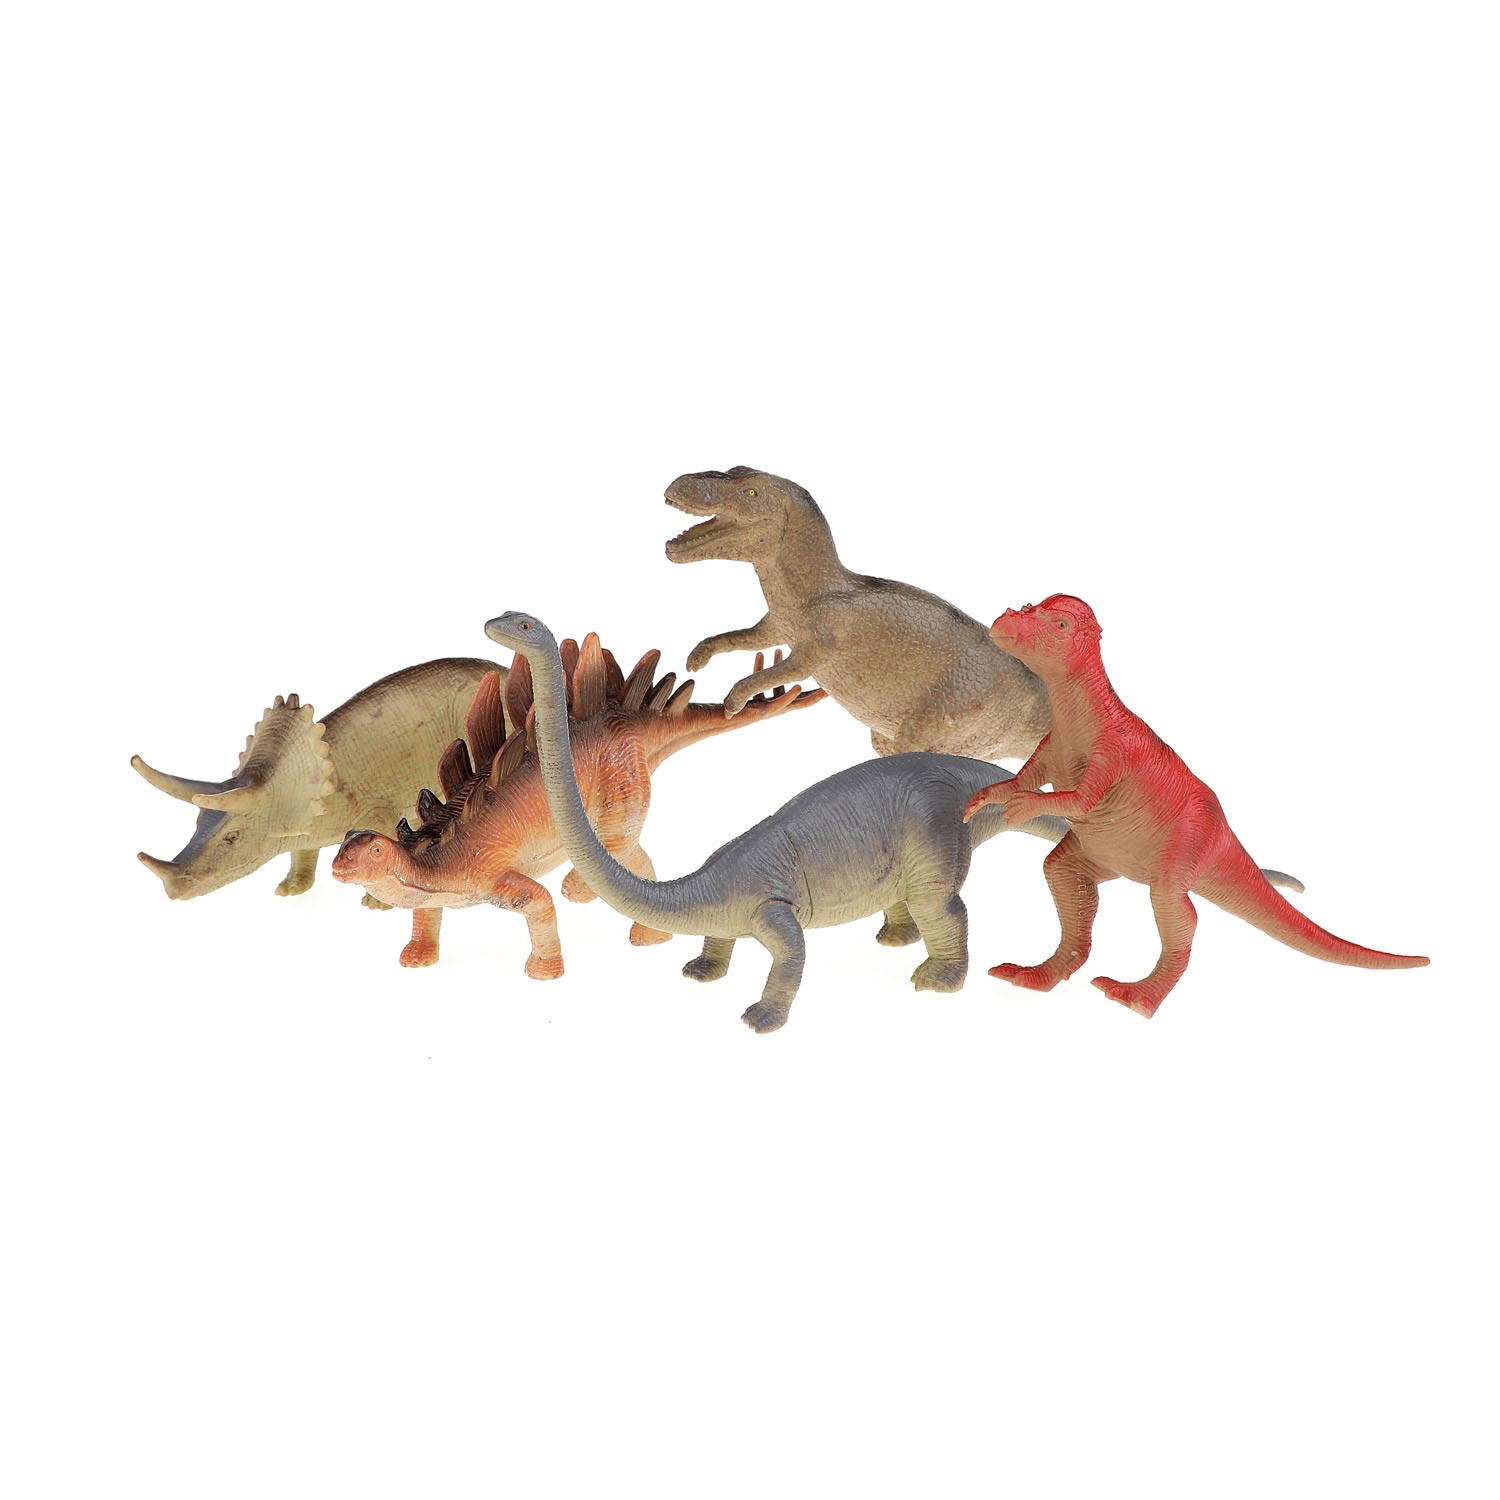 Sterkte opslag zuurstof Animal World Dino Deluxe, 5st. online kopen? | Lobbes Speelgoed